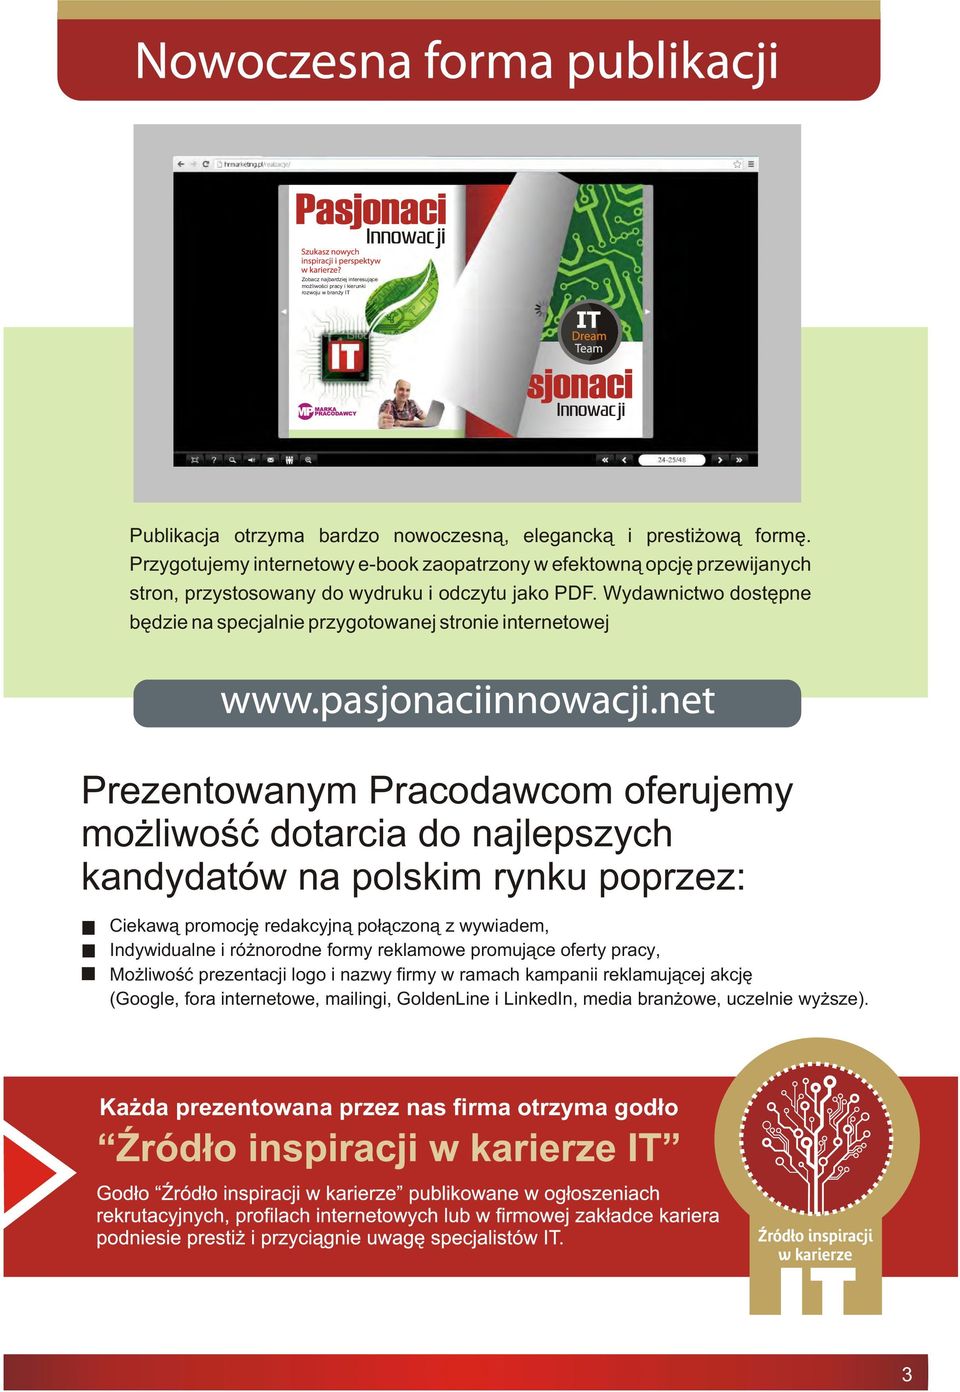 Wydawnictwo dostêpne bêdzie na specjalnie przygotowanej stronie internetowej Prezentowanym Pracodawcom oferujemy mo liwoœæ dotarcia do najlepszych kandydatów na polskim rynku poprzez: Ciekaw¹